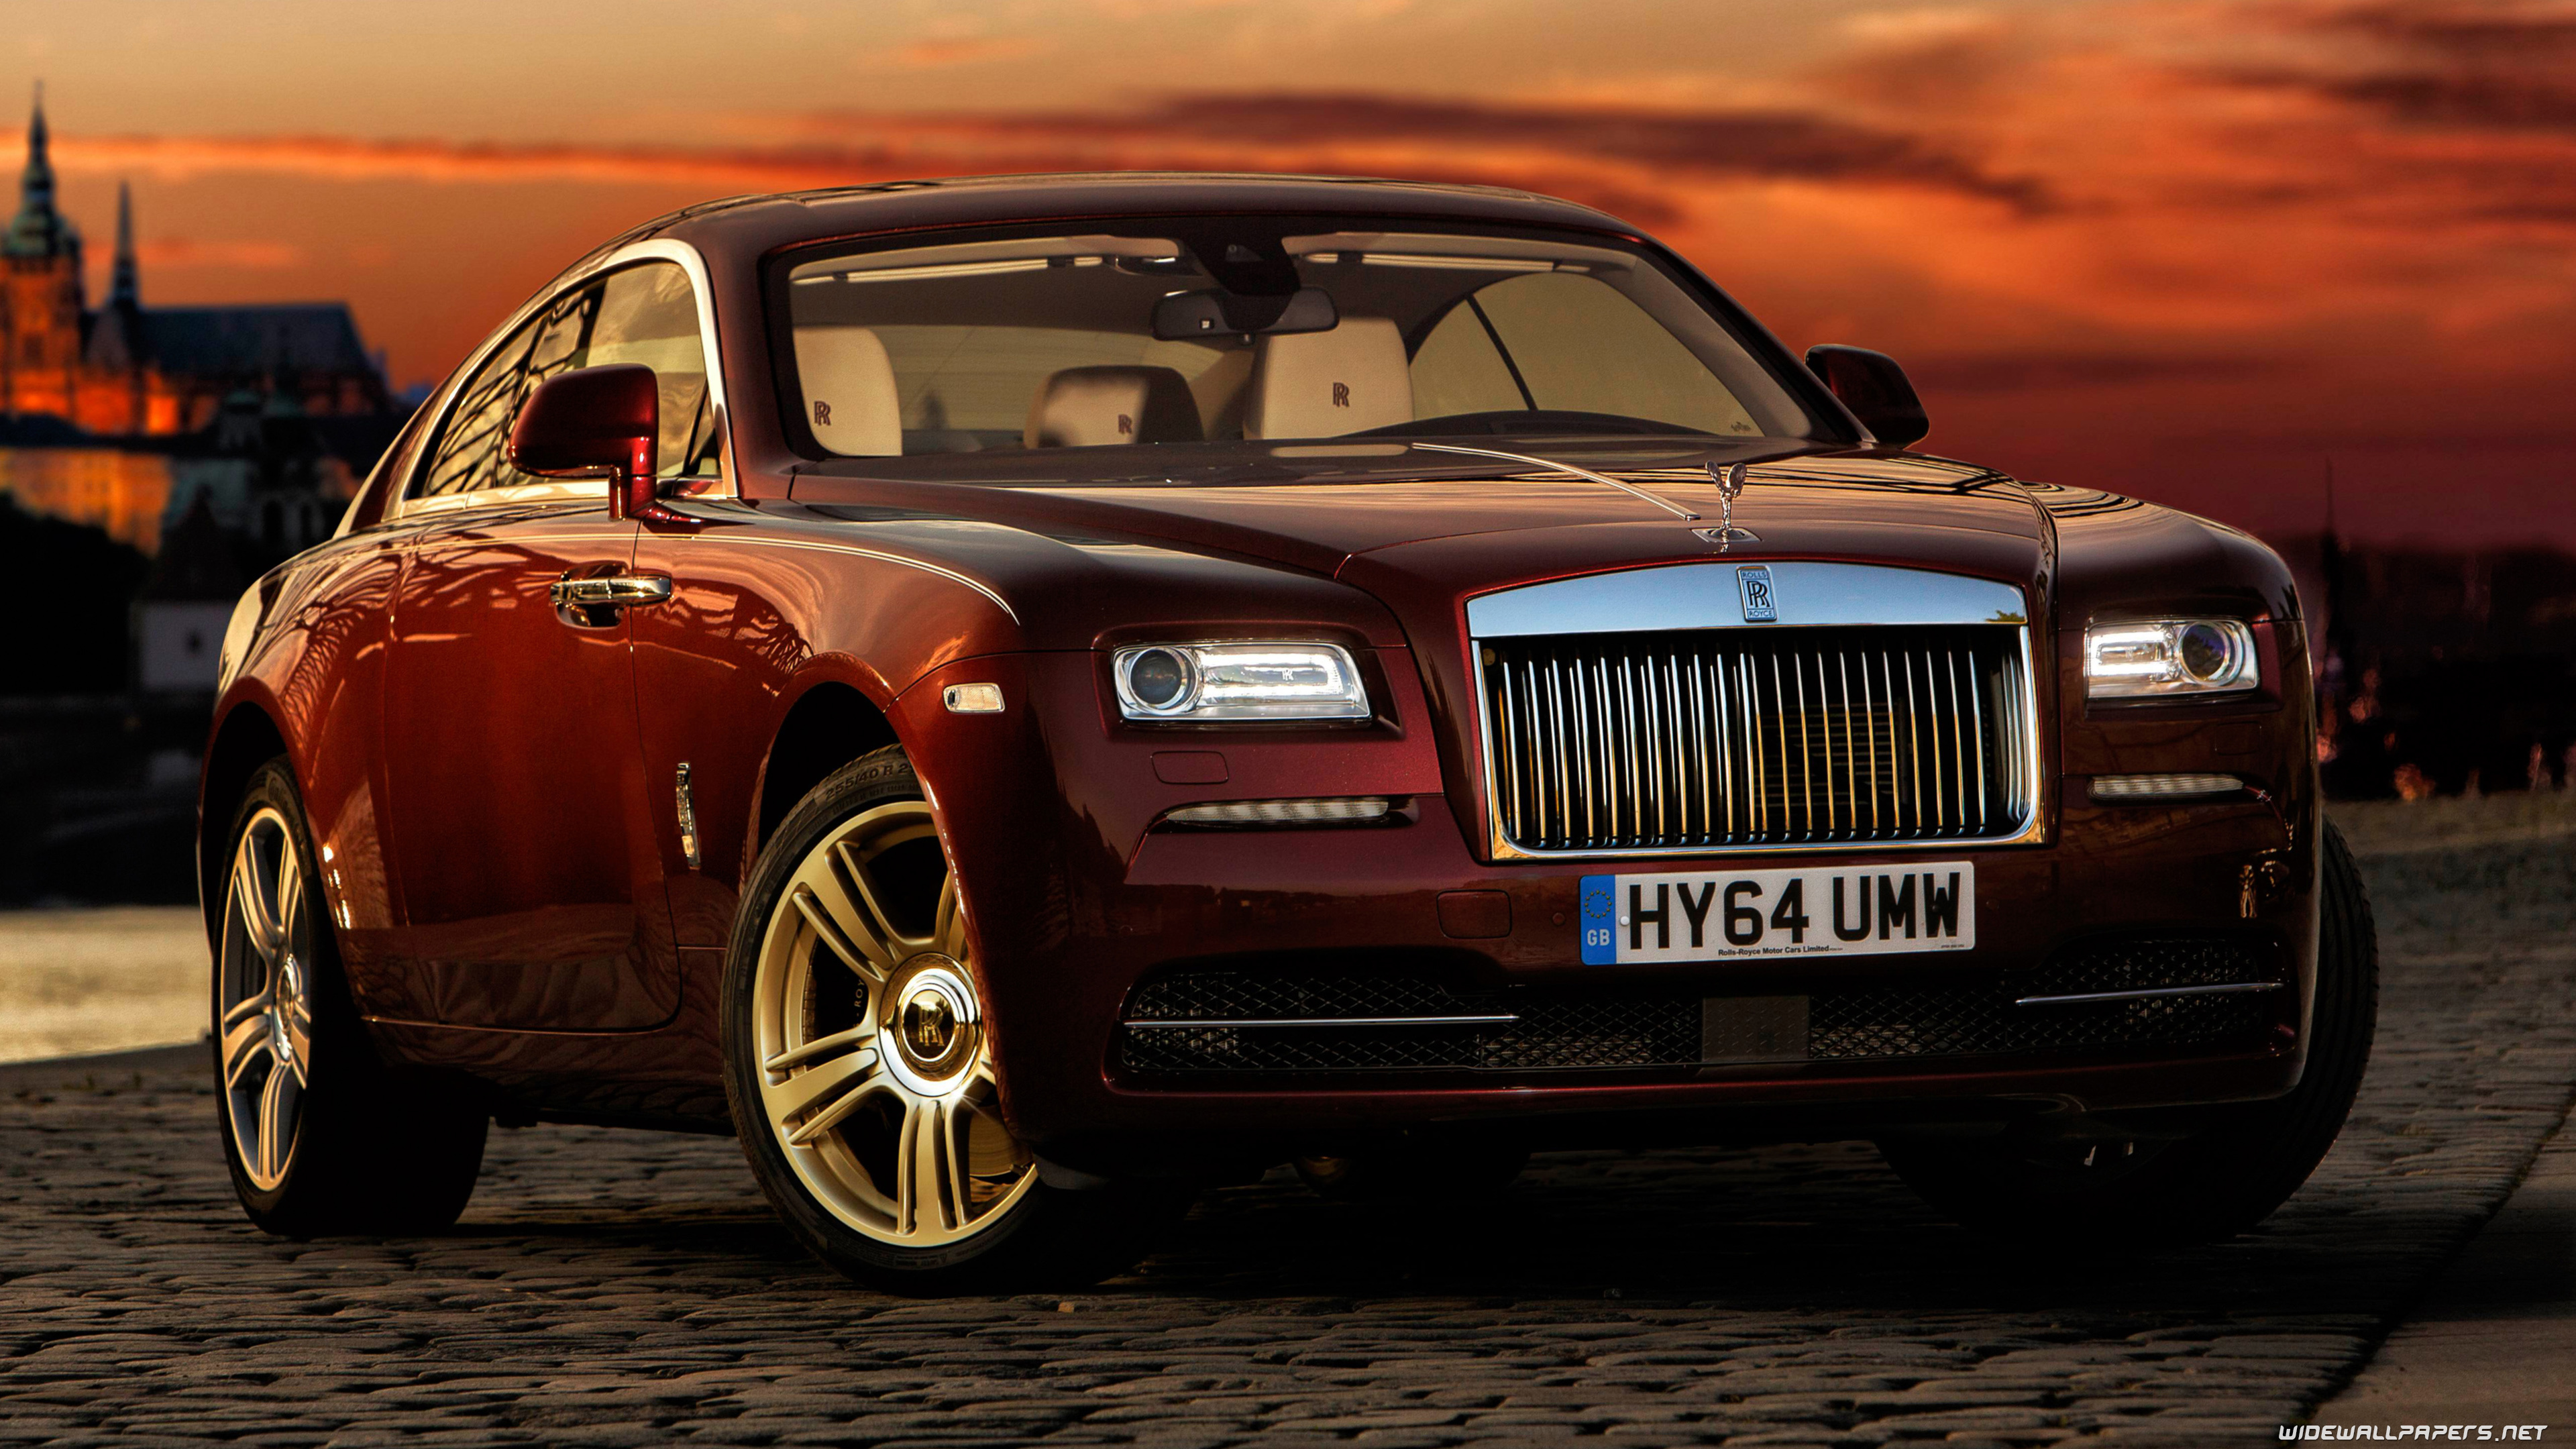 Rolls-Royce Wraith, cars, desktop wallpapers, Ultra HD, 3840x2160 4K Desktop